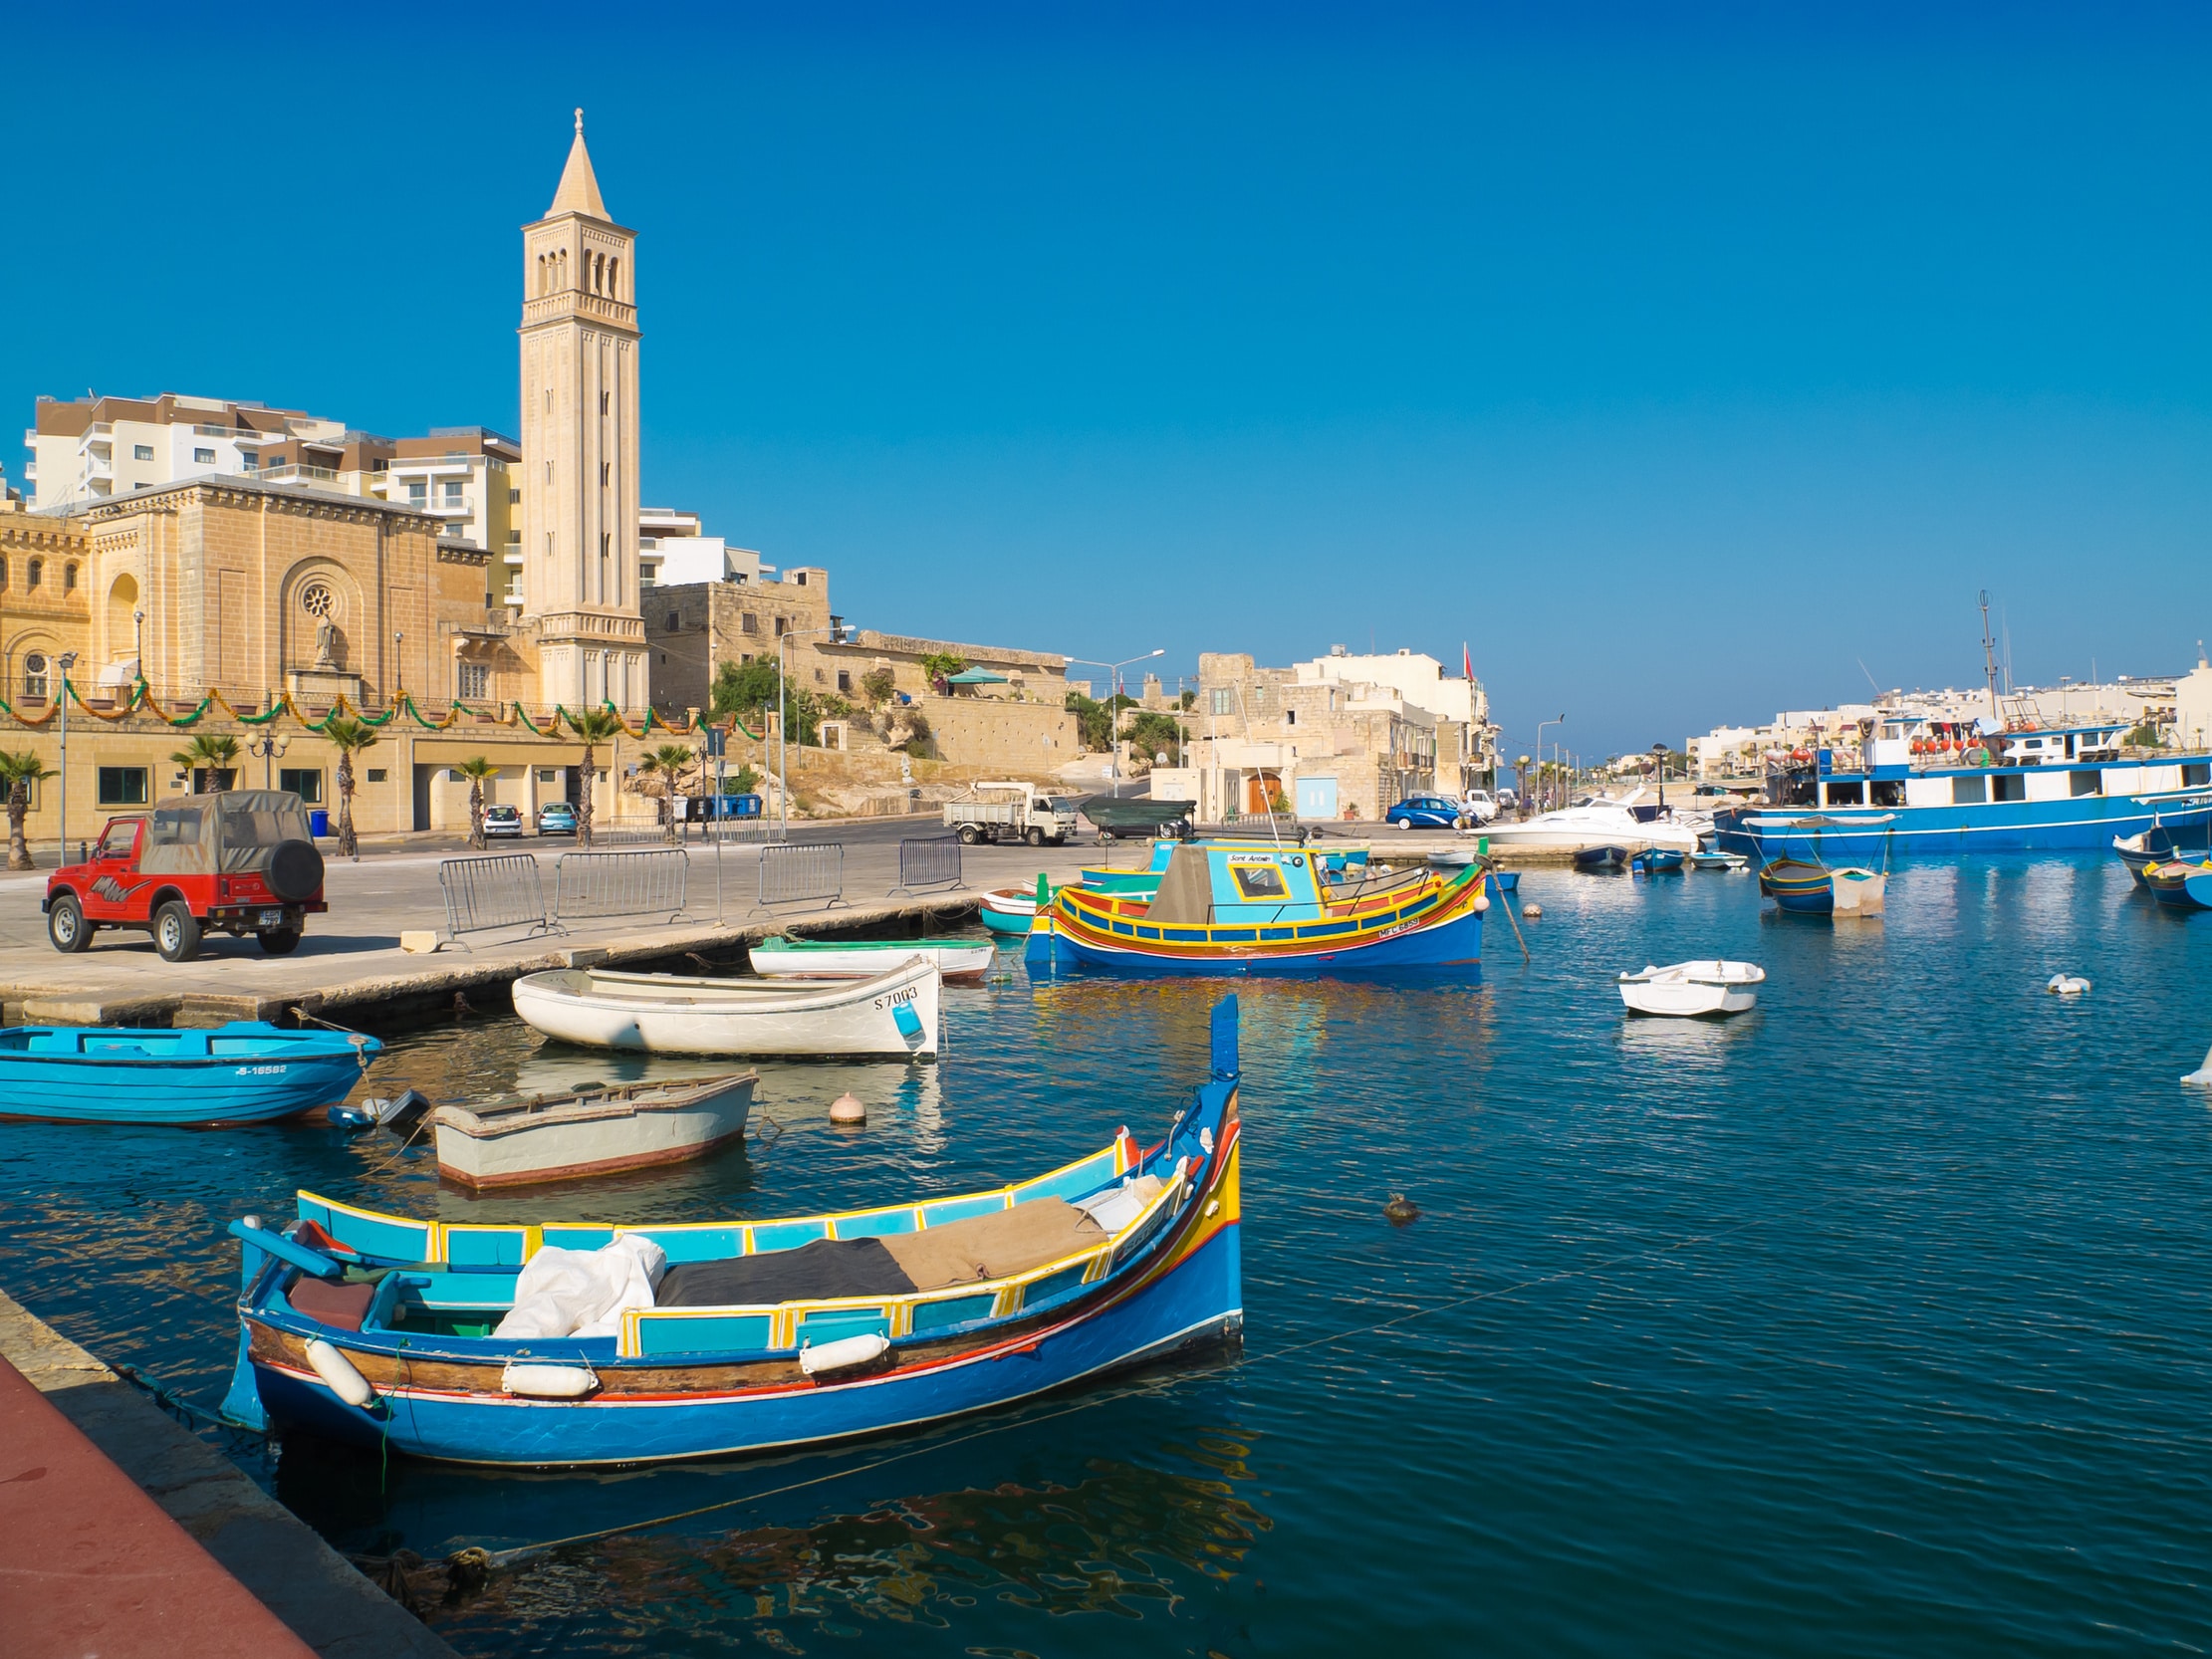 Vue de type carte postale prise lors d'un voyage linguistique à Malte